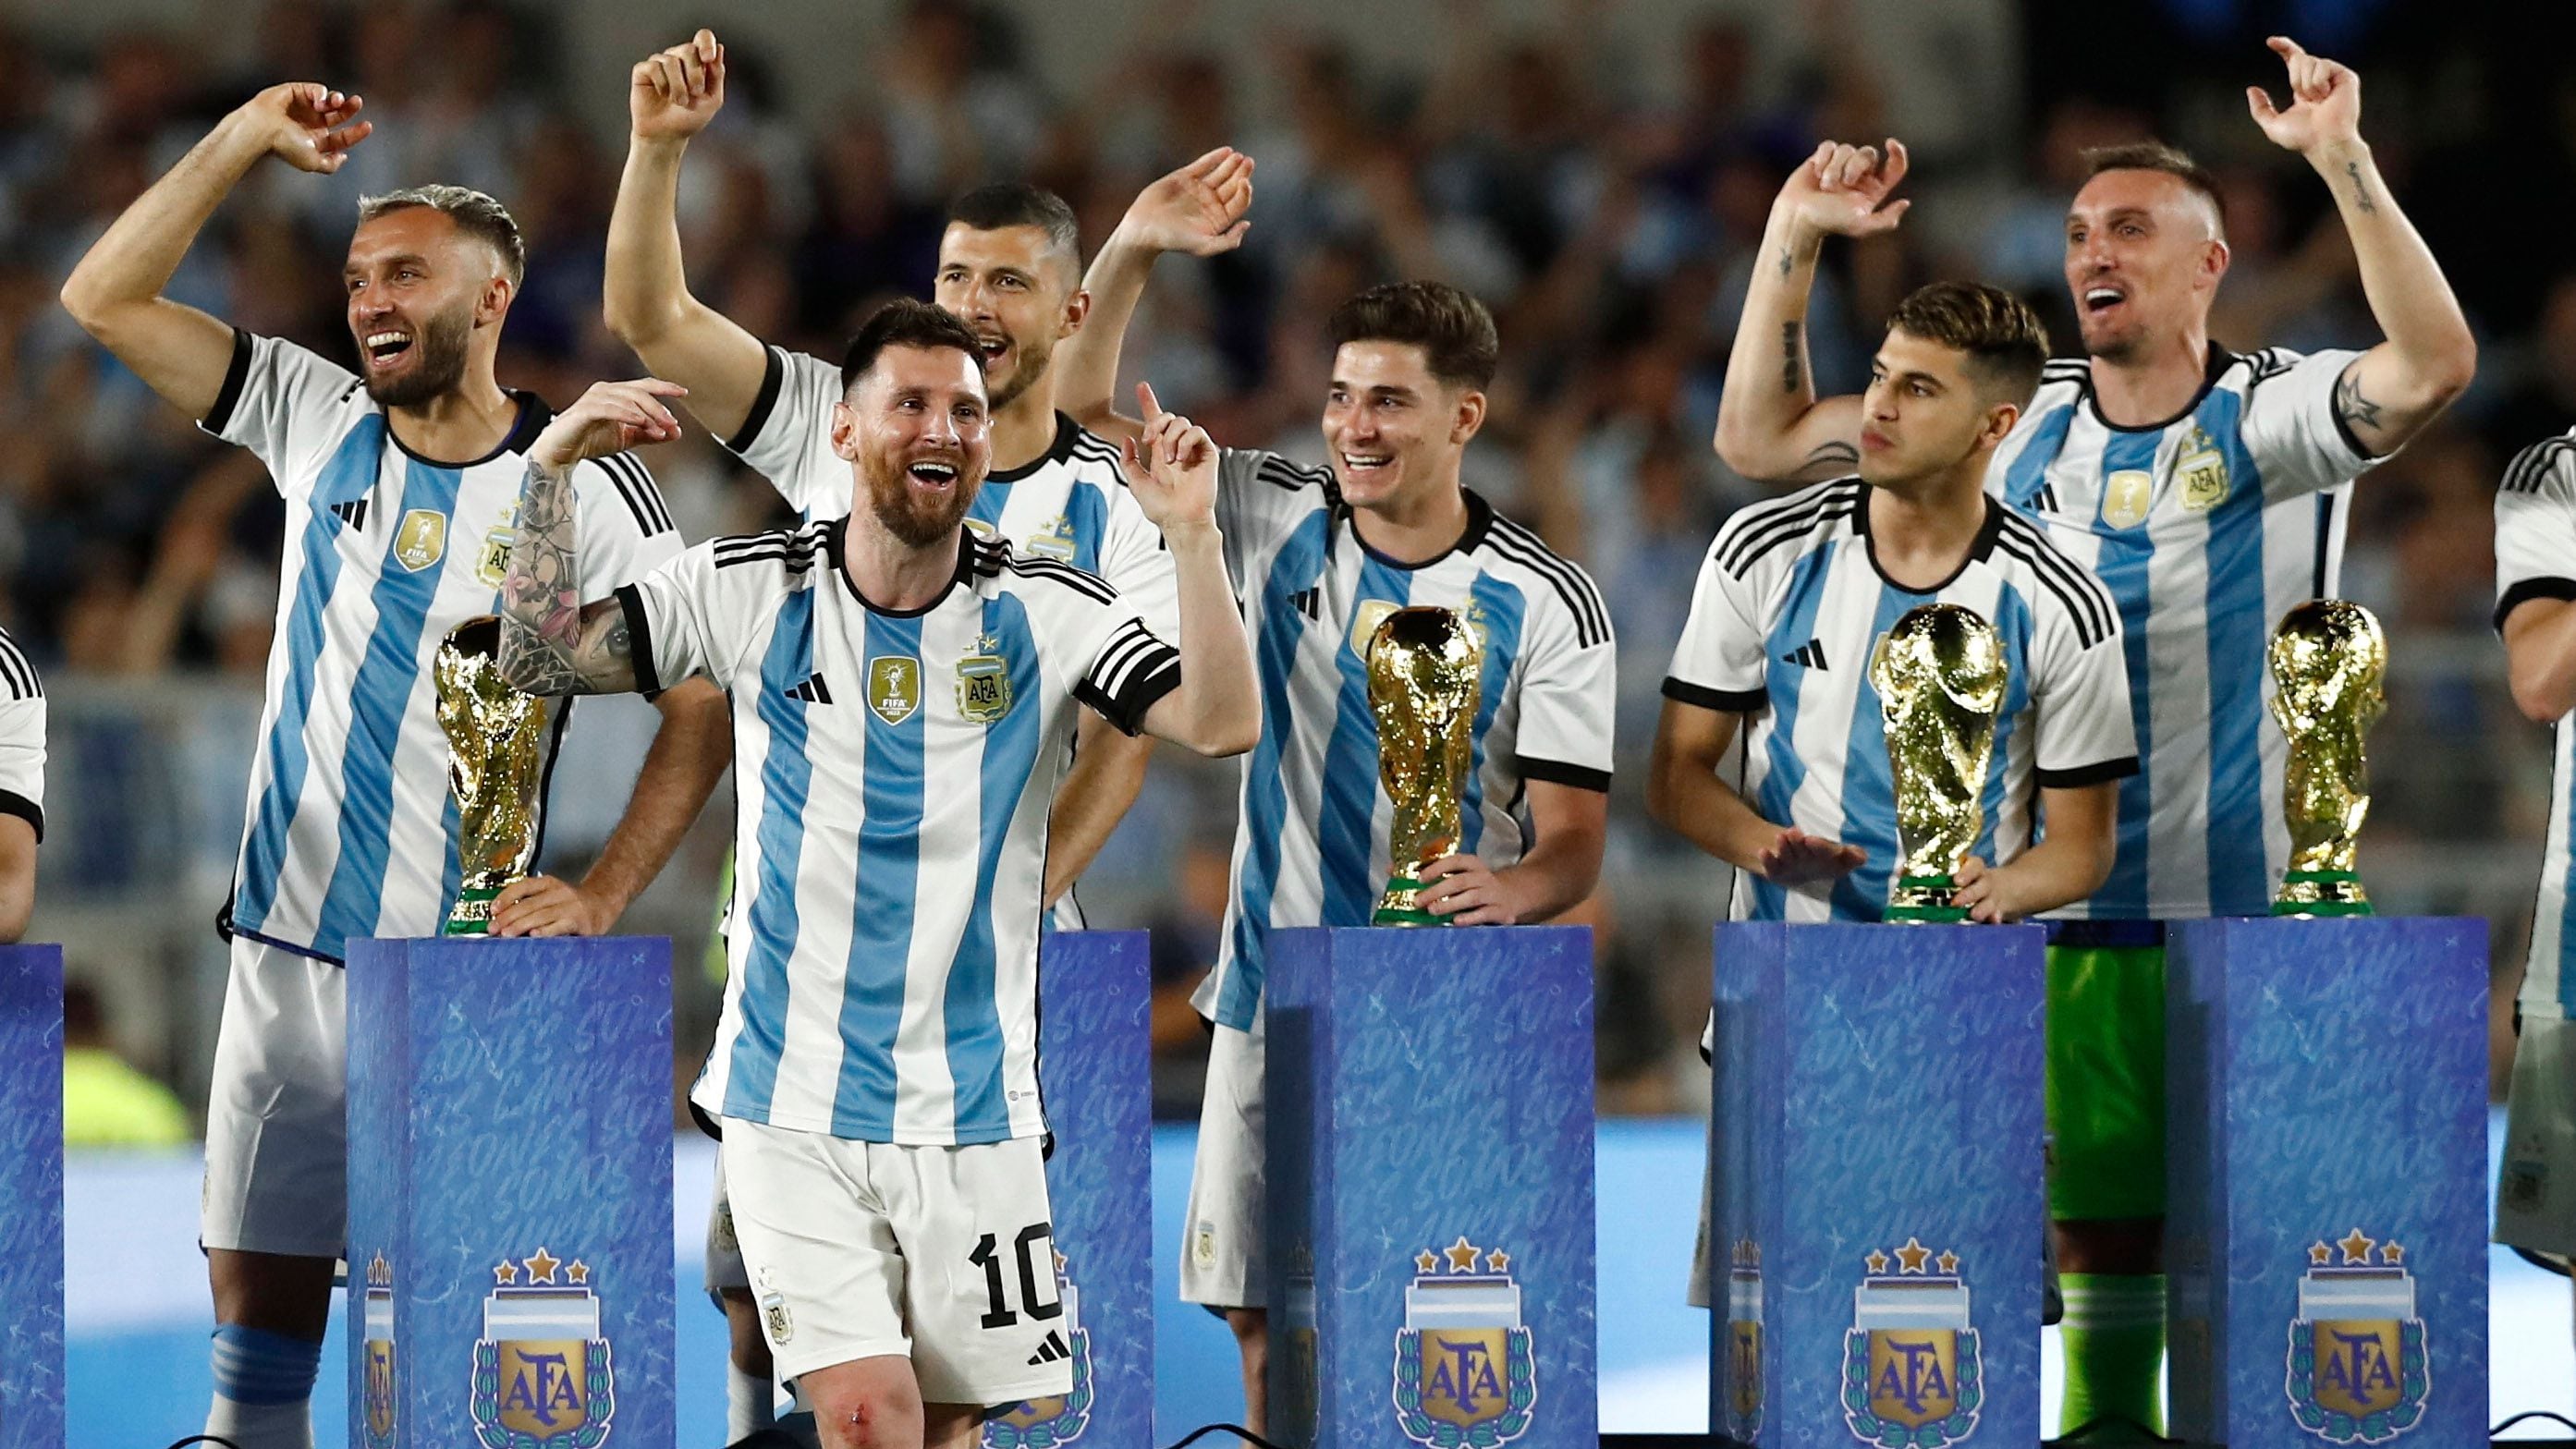 La selección argentina ya tendría lista su camiseta para los próximos compromisos oficiales (Foto: Reuters)